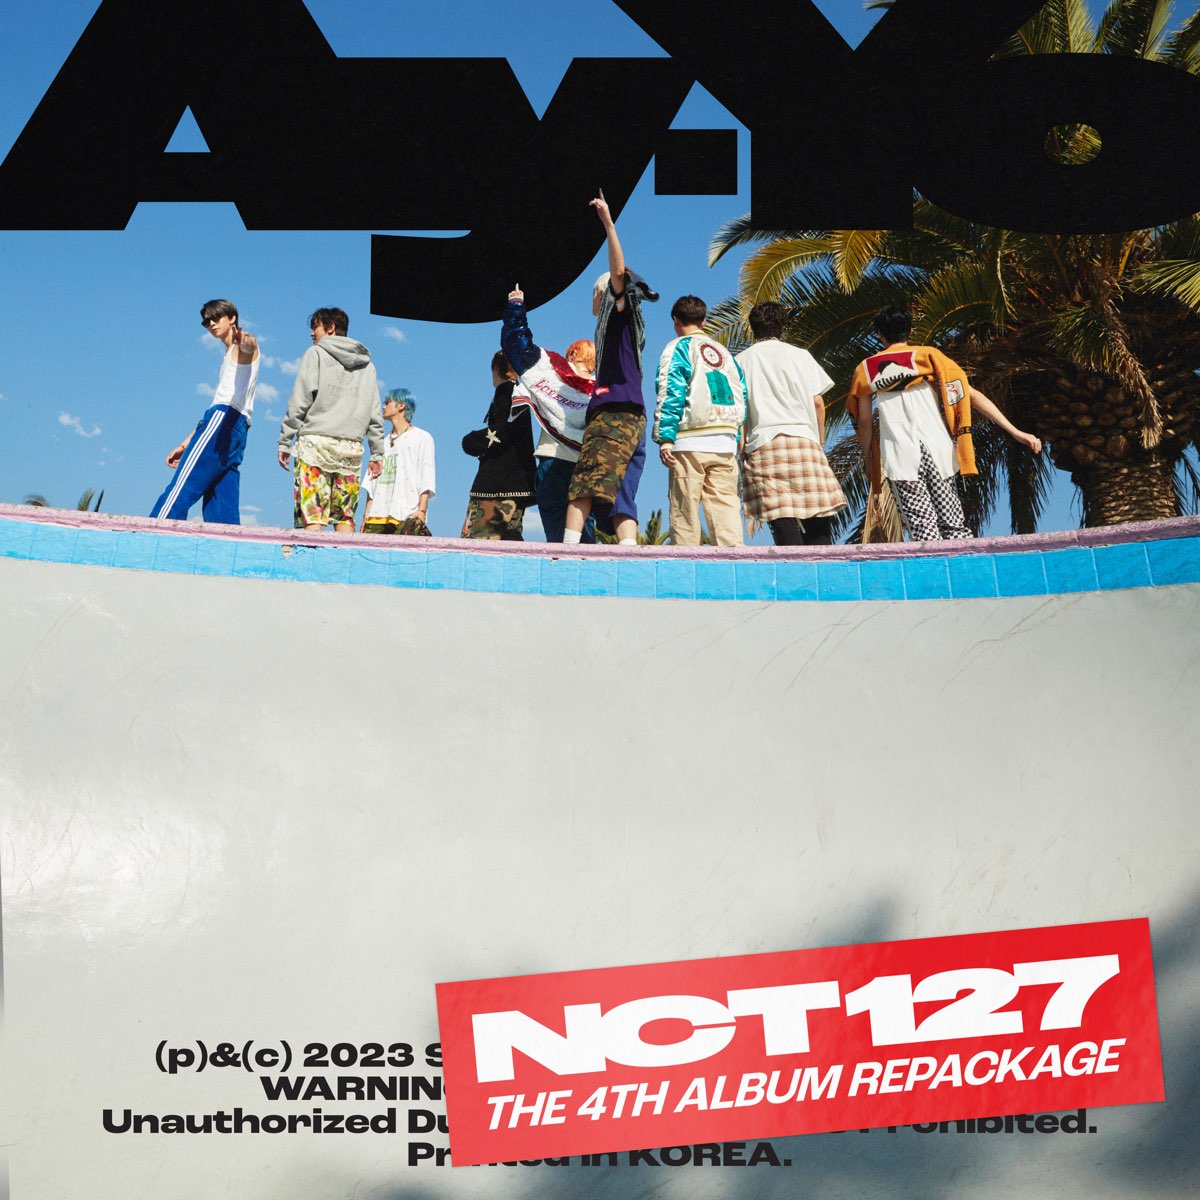 Ay-Yo - The 4th Album Repackage” álbum de NCT 127 en Apple Music